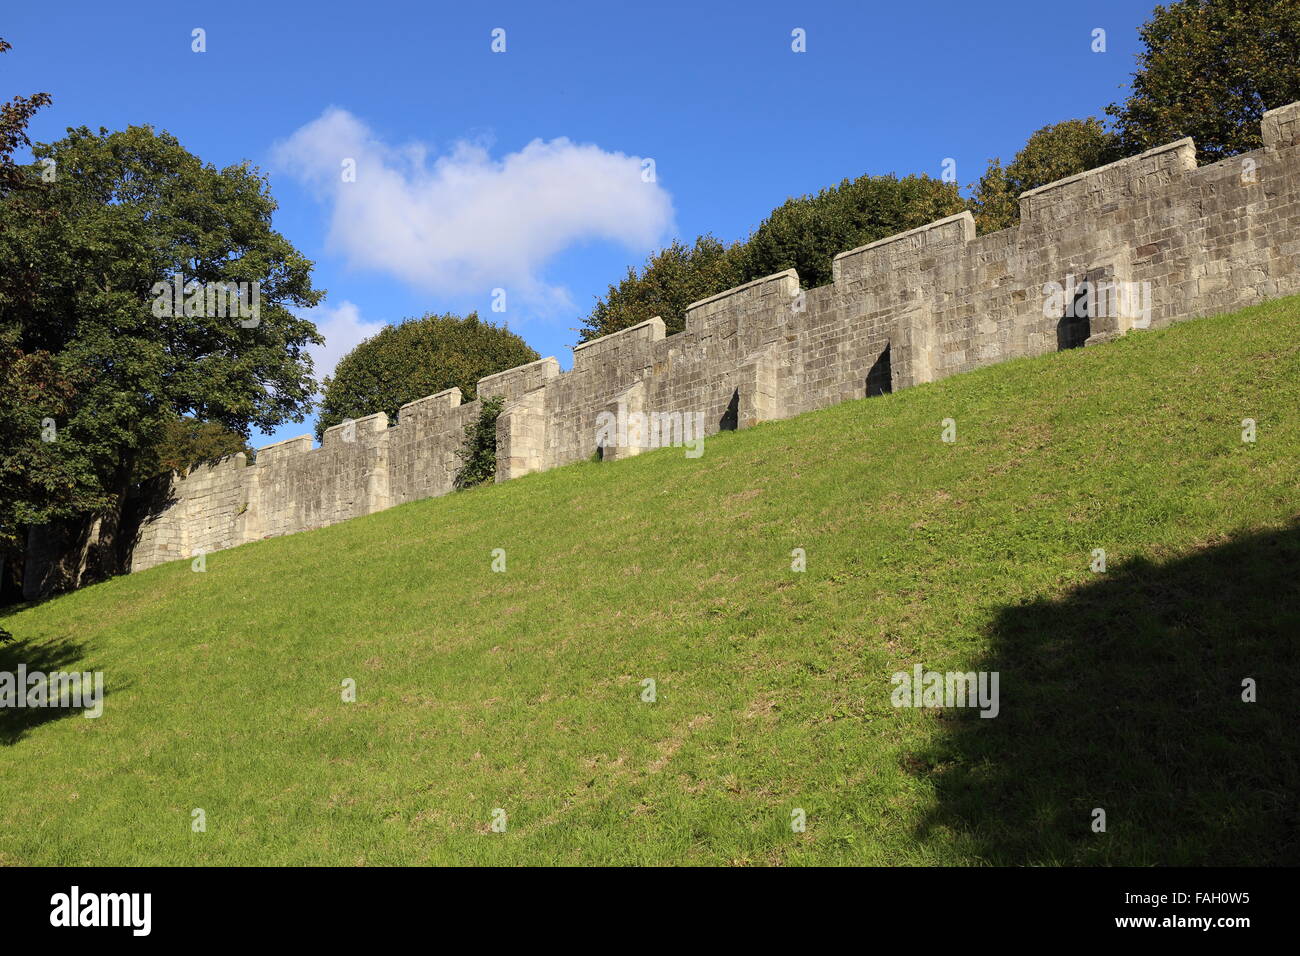 Les murs anciens de la ville de York, Yorkshire, Angleterre. Banque D'Images